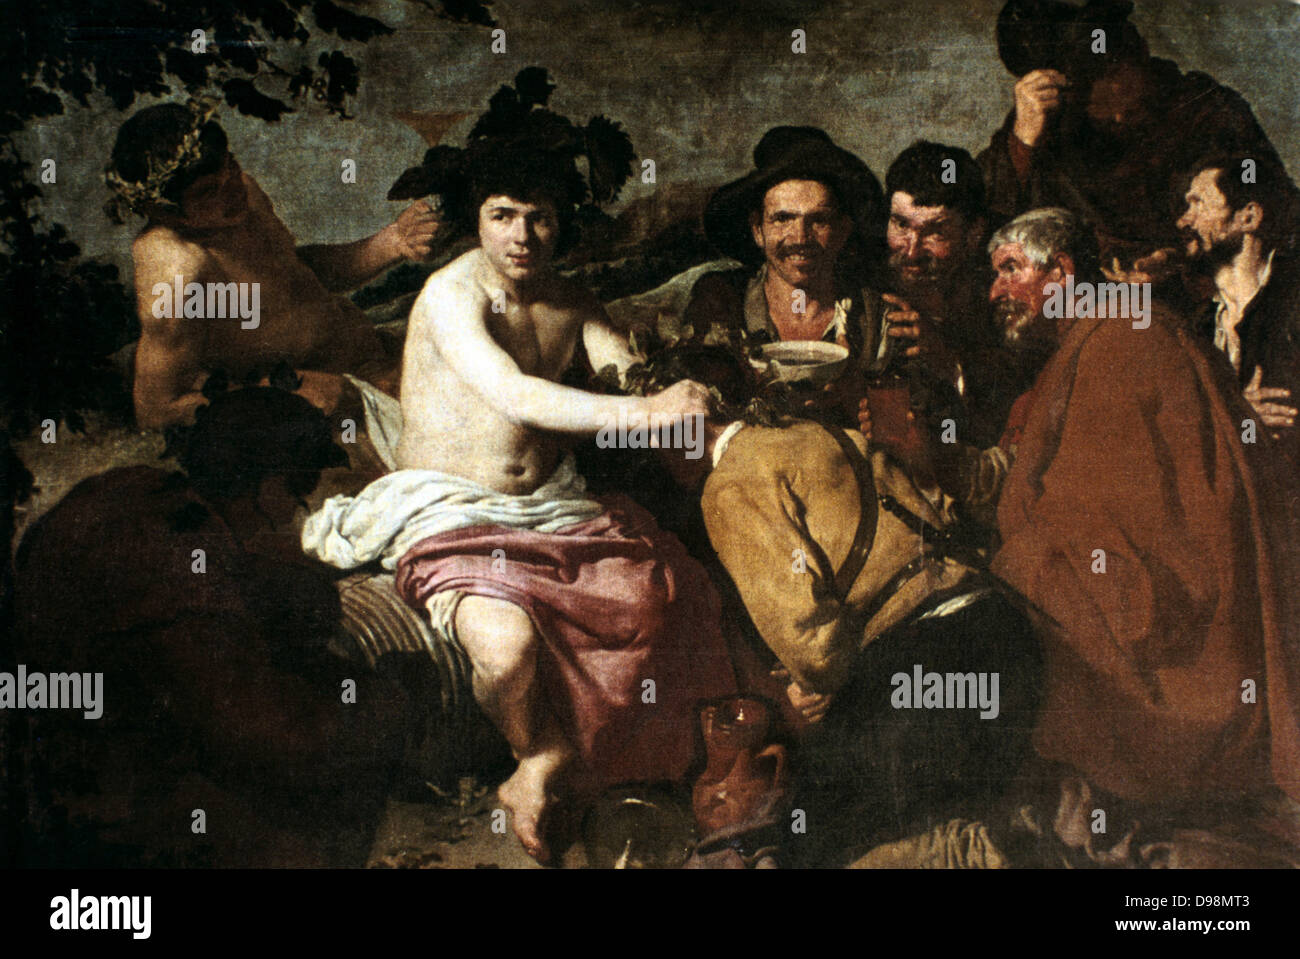 Fest der auch Bacchus' "Der Trinker". Diego Velasquez (1599-1660), spanischer Maler. Dionysius, in der griechischen Mythologie der Gott des Weines, hier mit dem betrunkenen spanischen Bauern. Stockfoto